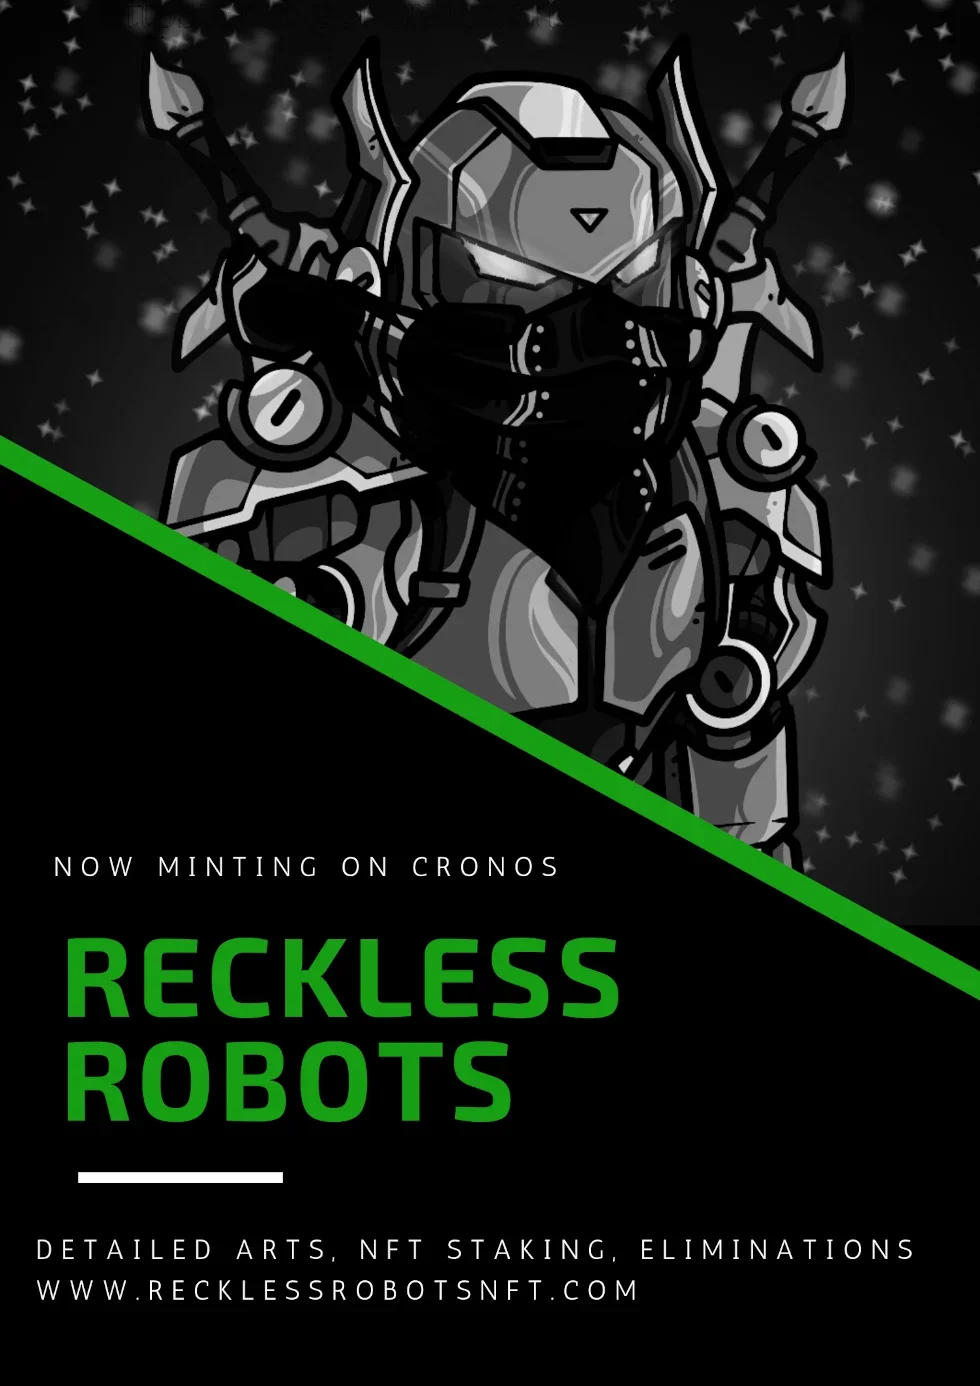 RecklessRobots